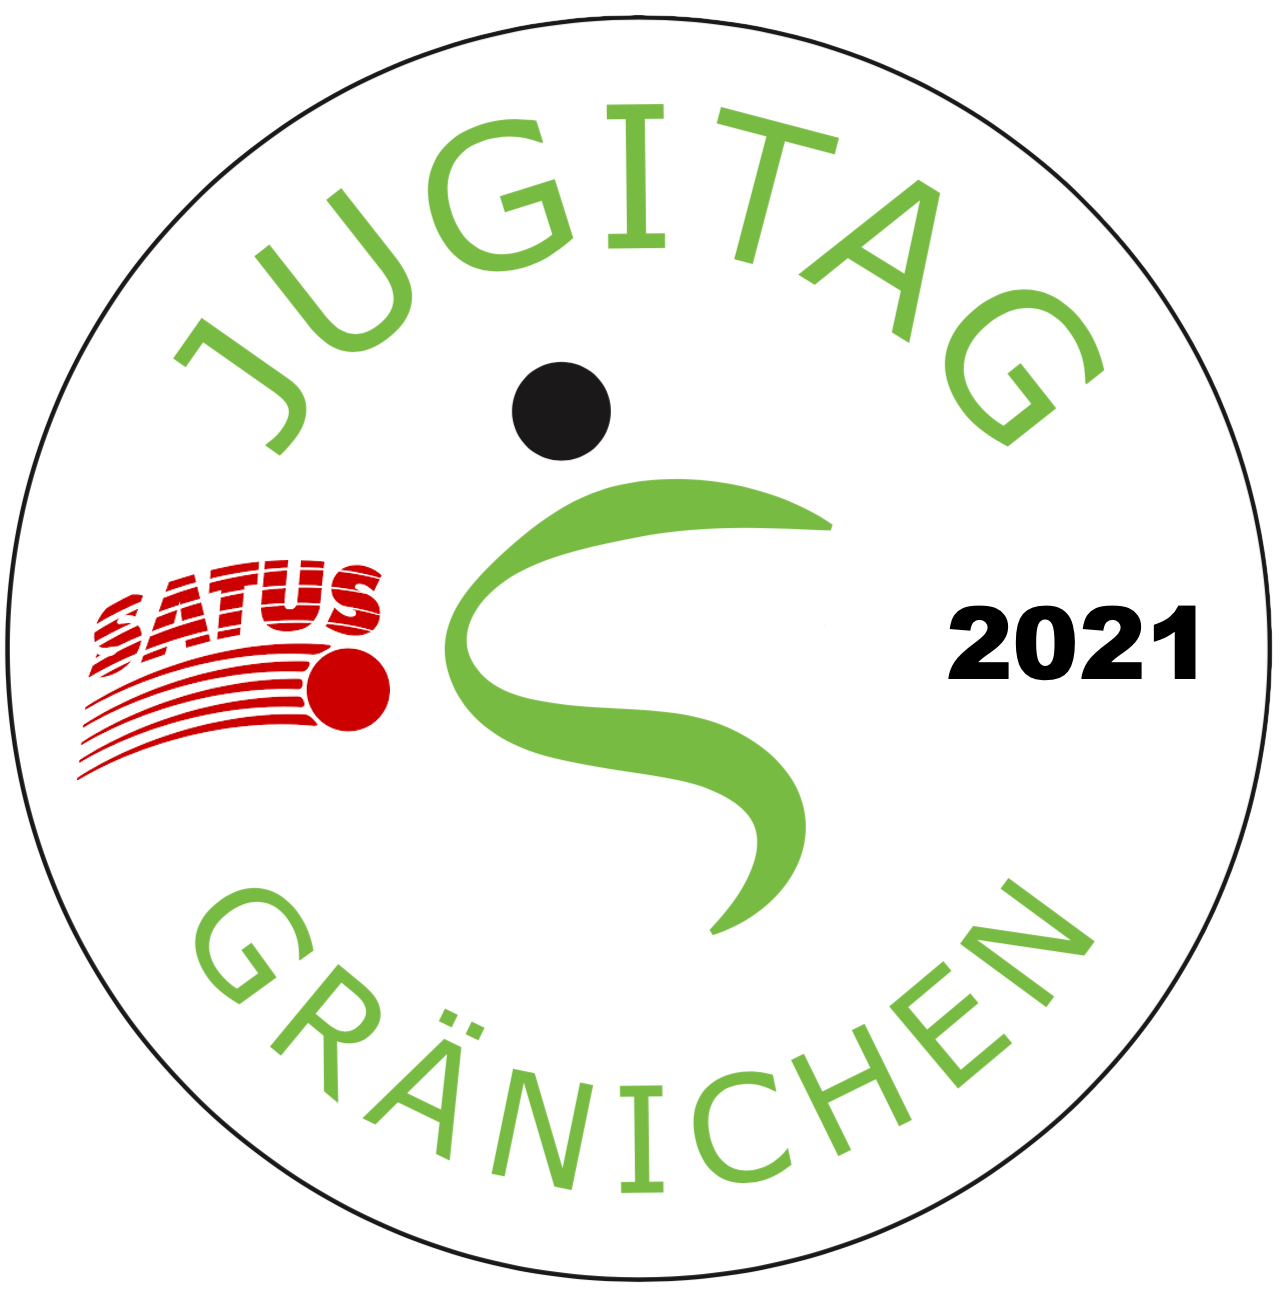 Jugitag 2021 in Gränichen - SATUS - Schweizer Arbeiter-, Turn- und Sportverband